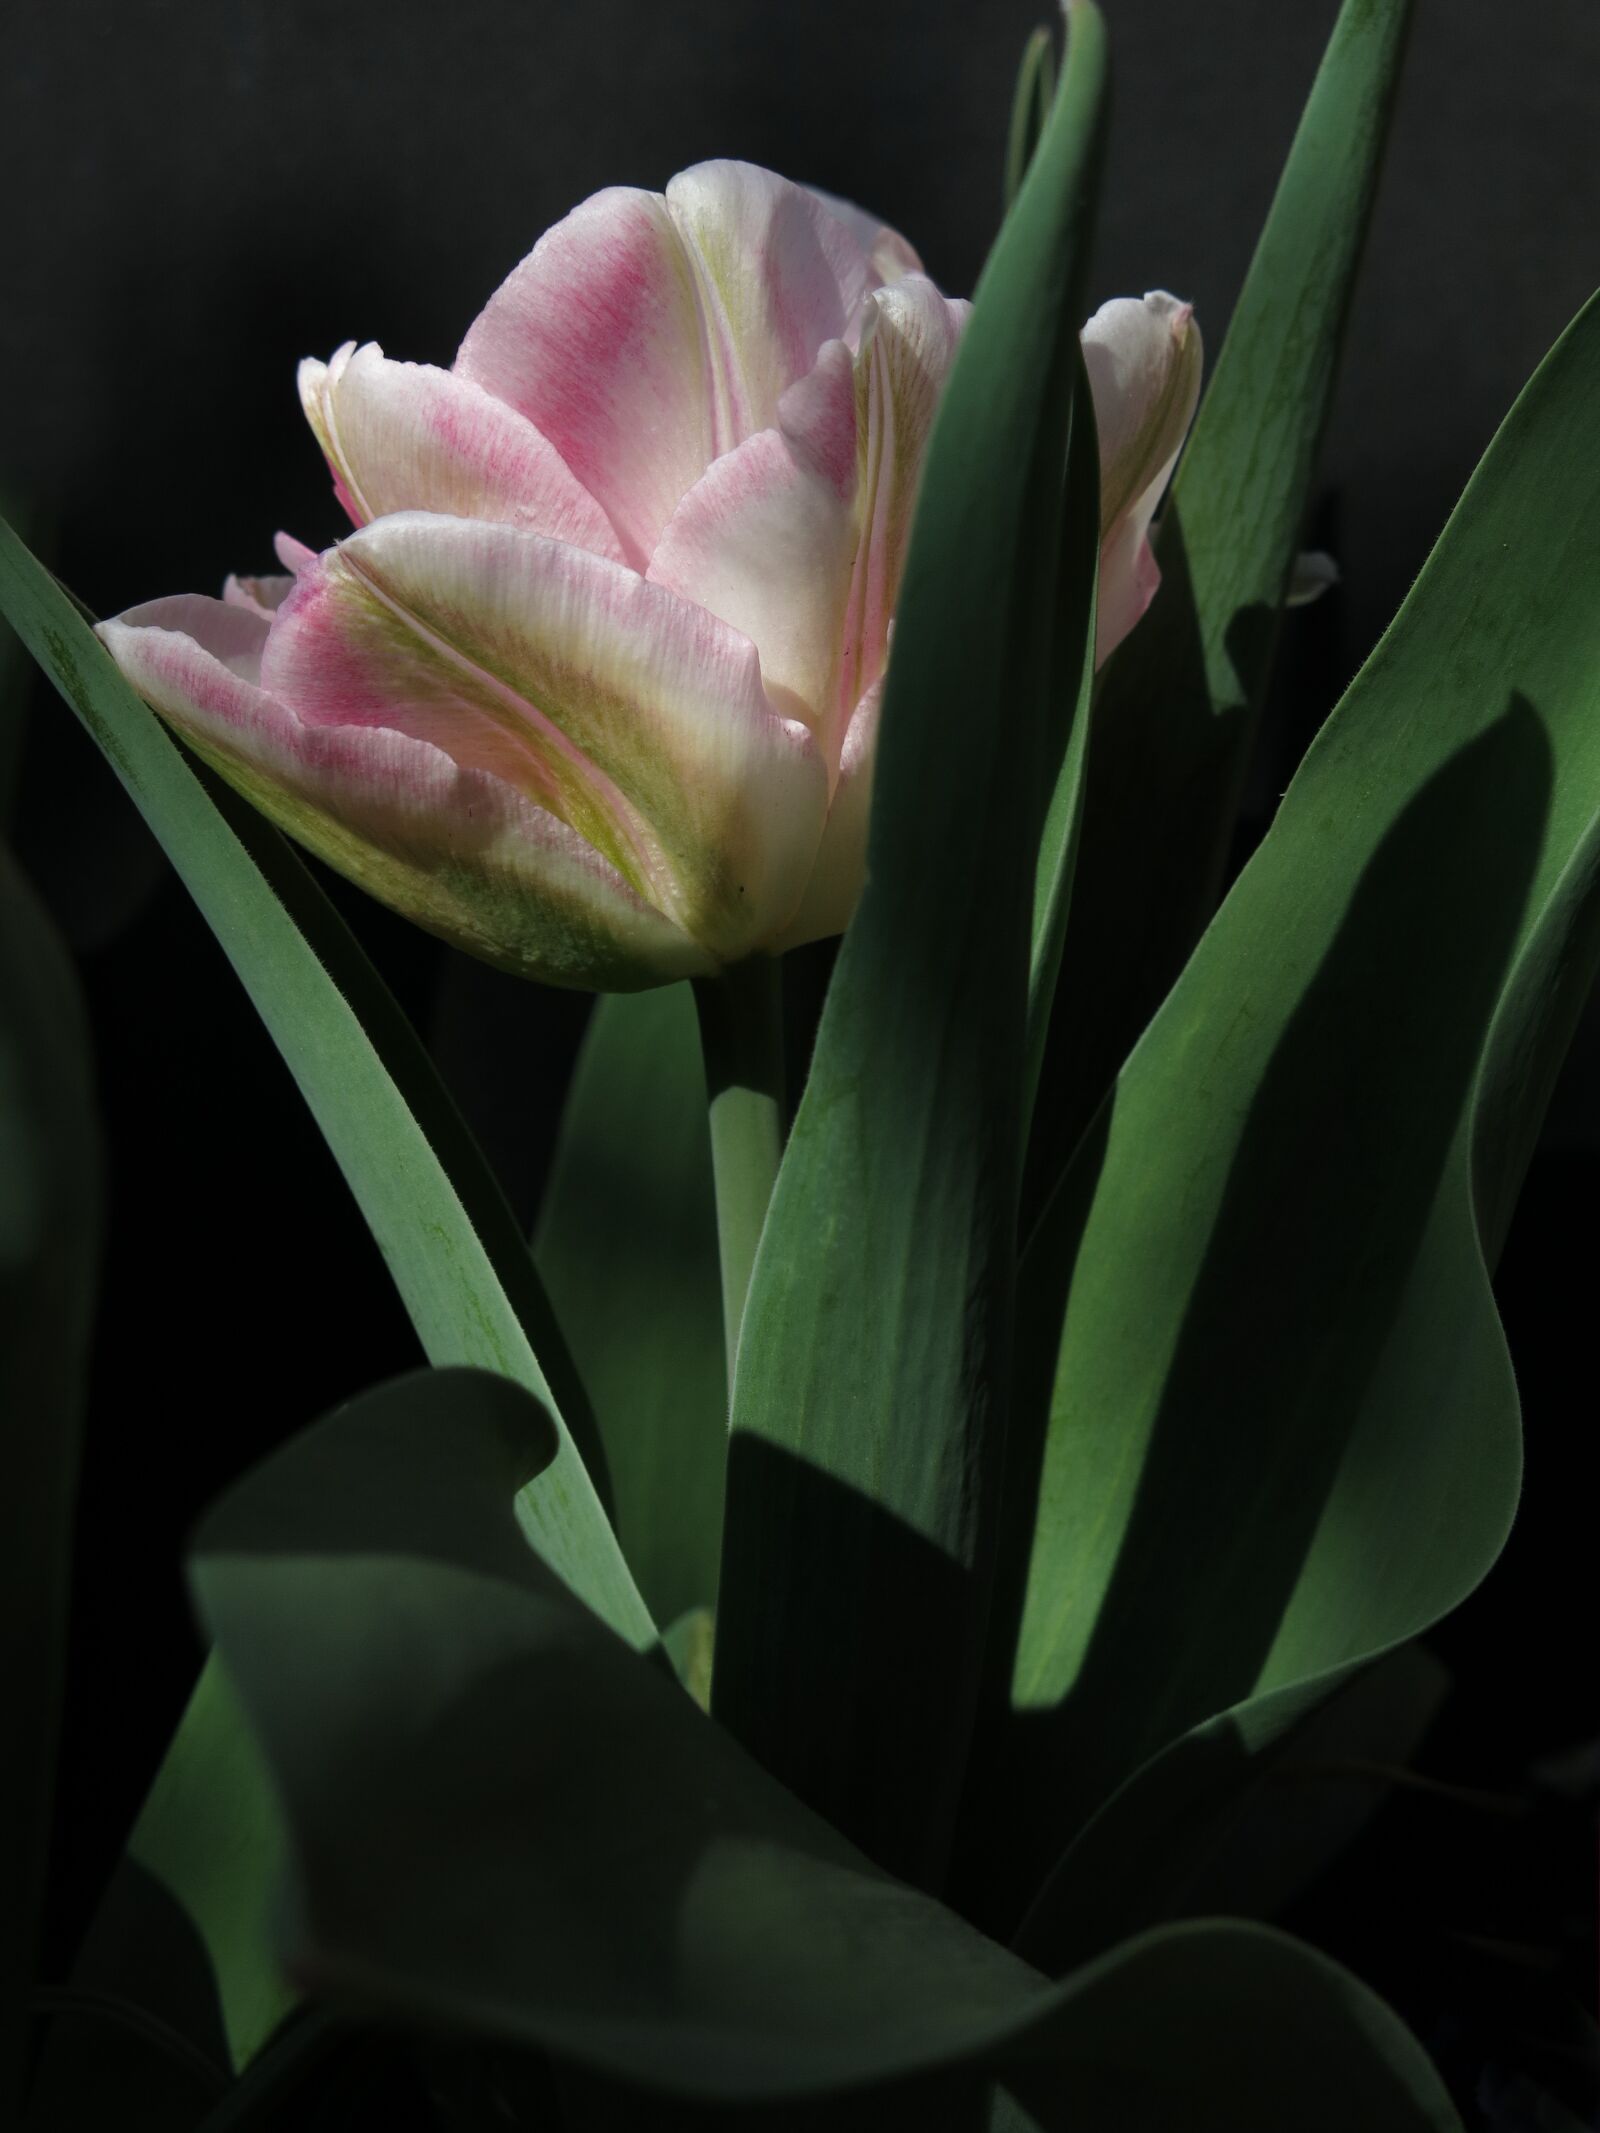 Canon PowerShot G15 sample photo. Tulip, viridiflora tulip, chinatown photography